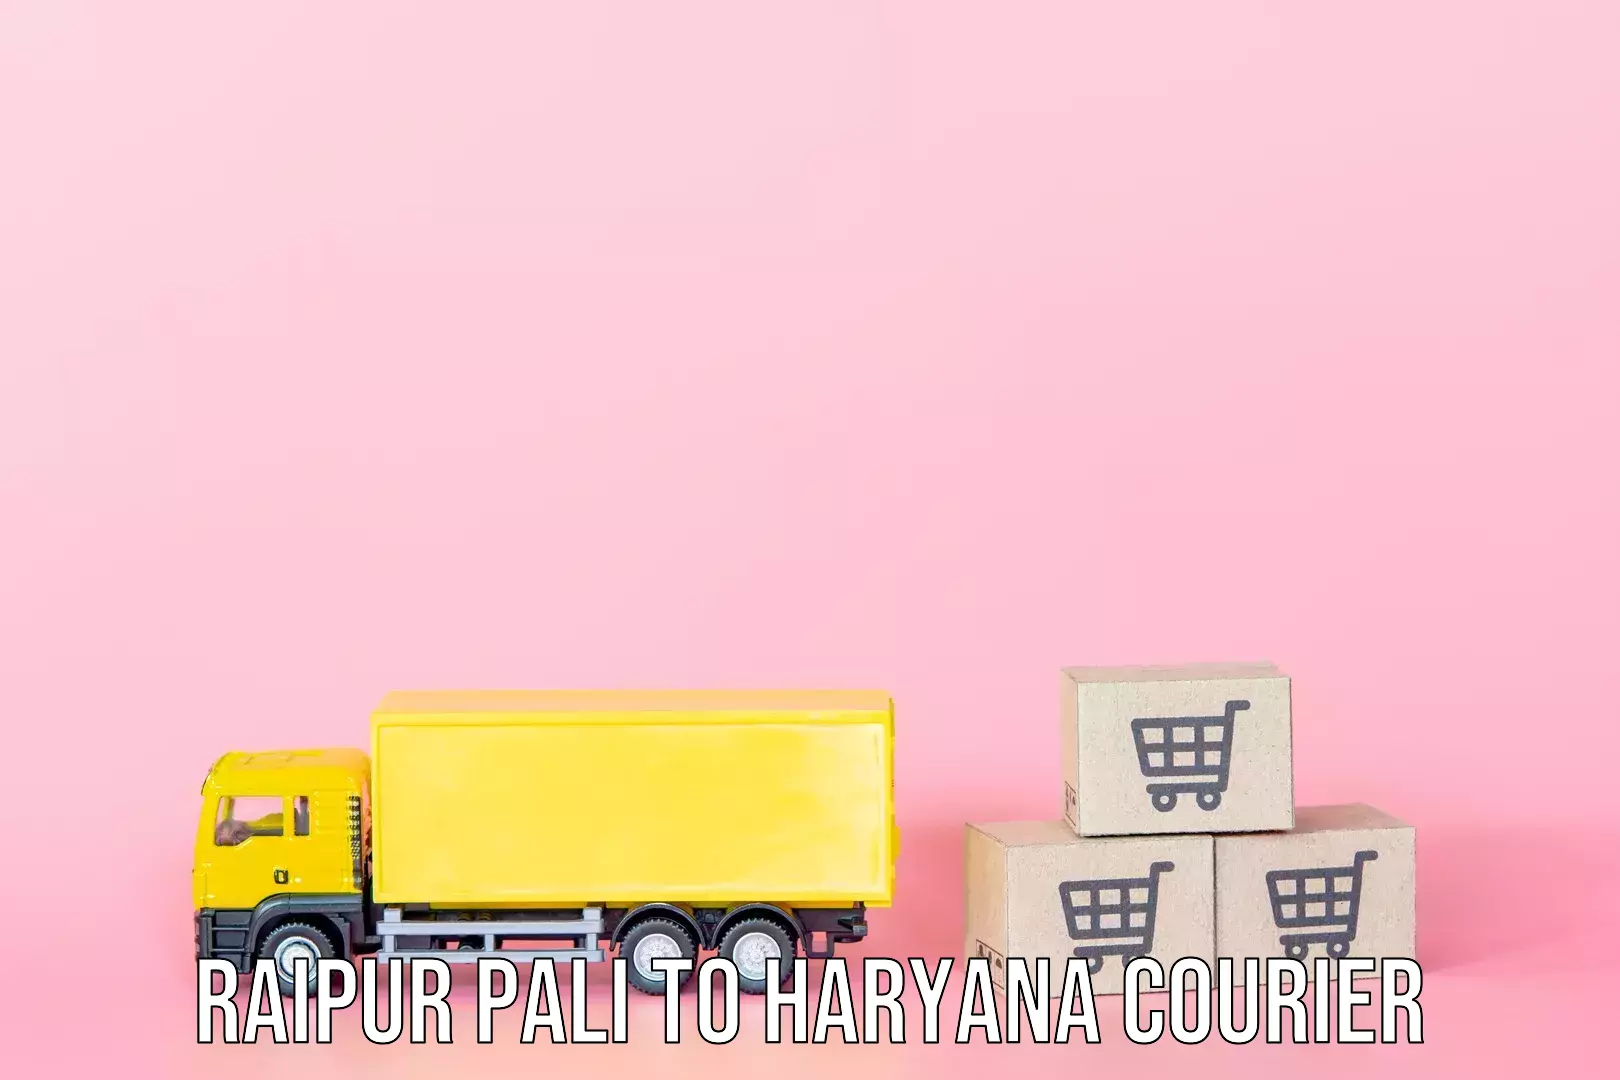 Baggage shipping schedule Raipur Pali to Gurgaon